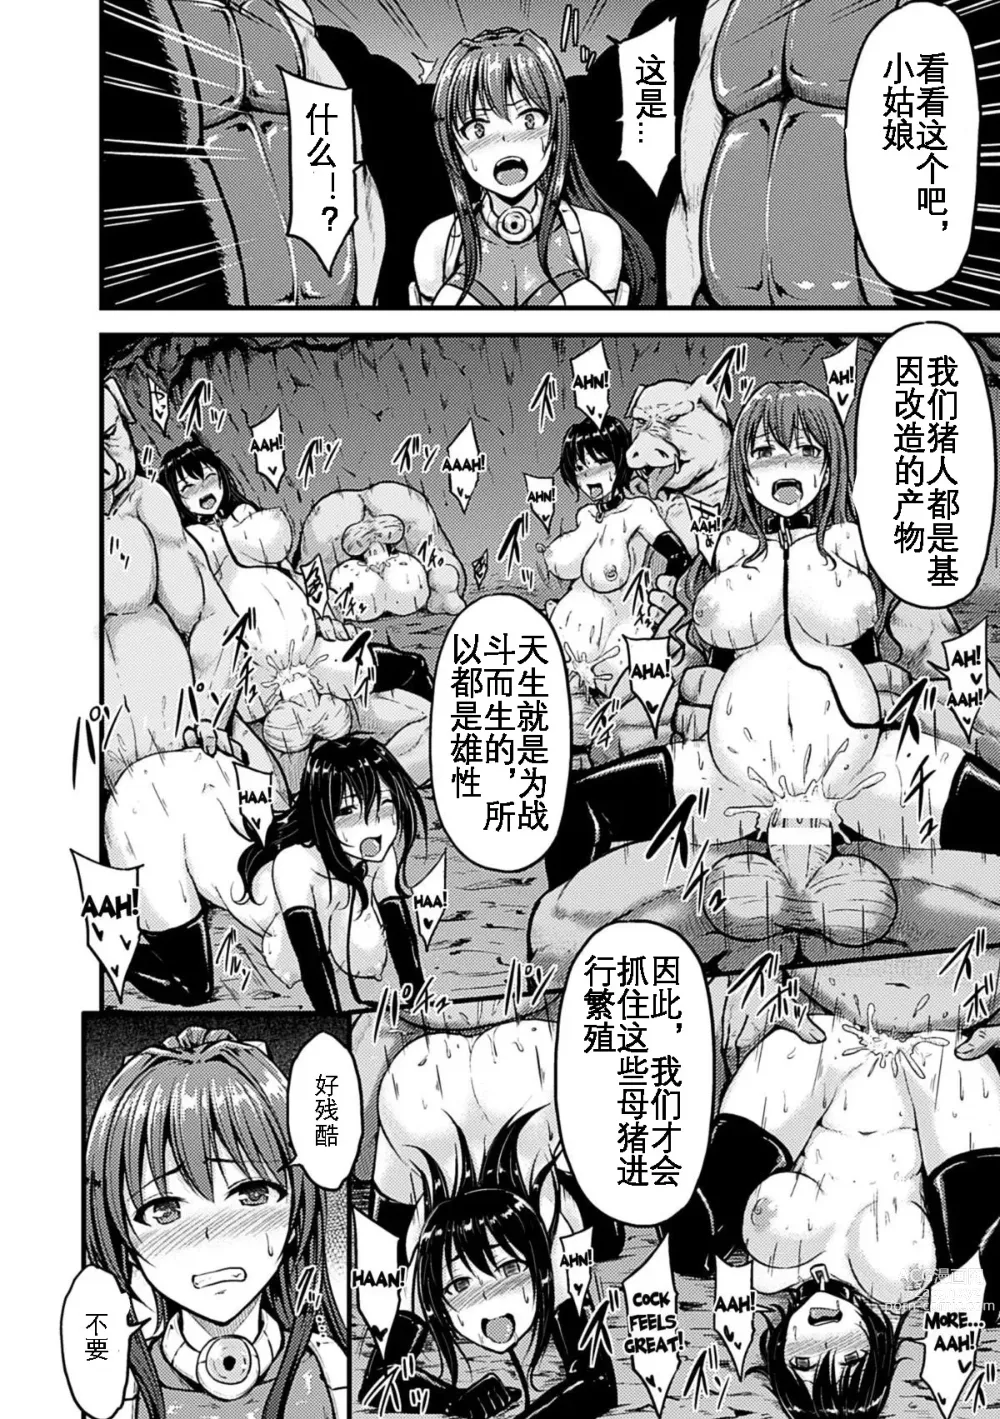 Page 7 of manga Irisraker Buta no Ko o Haramu Seigi no Senshi